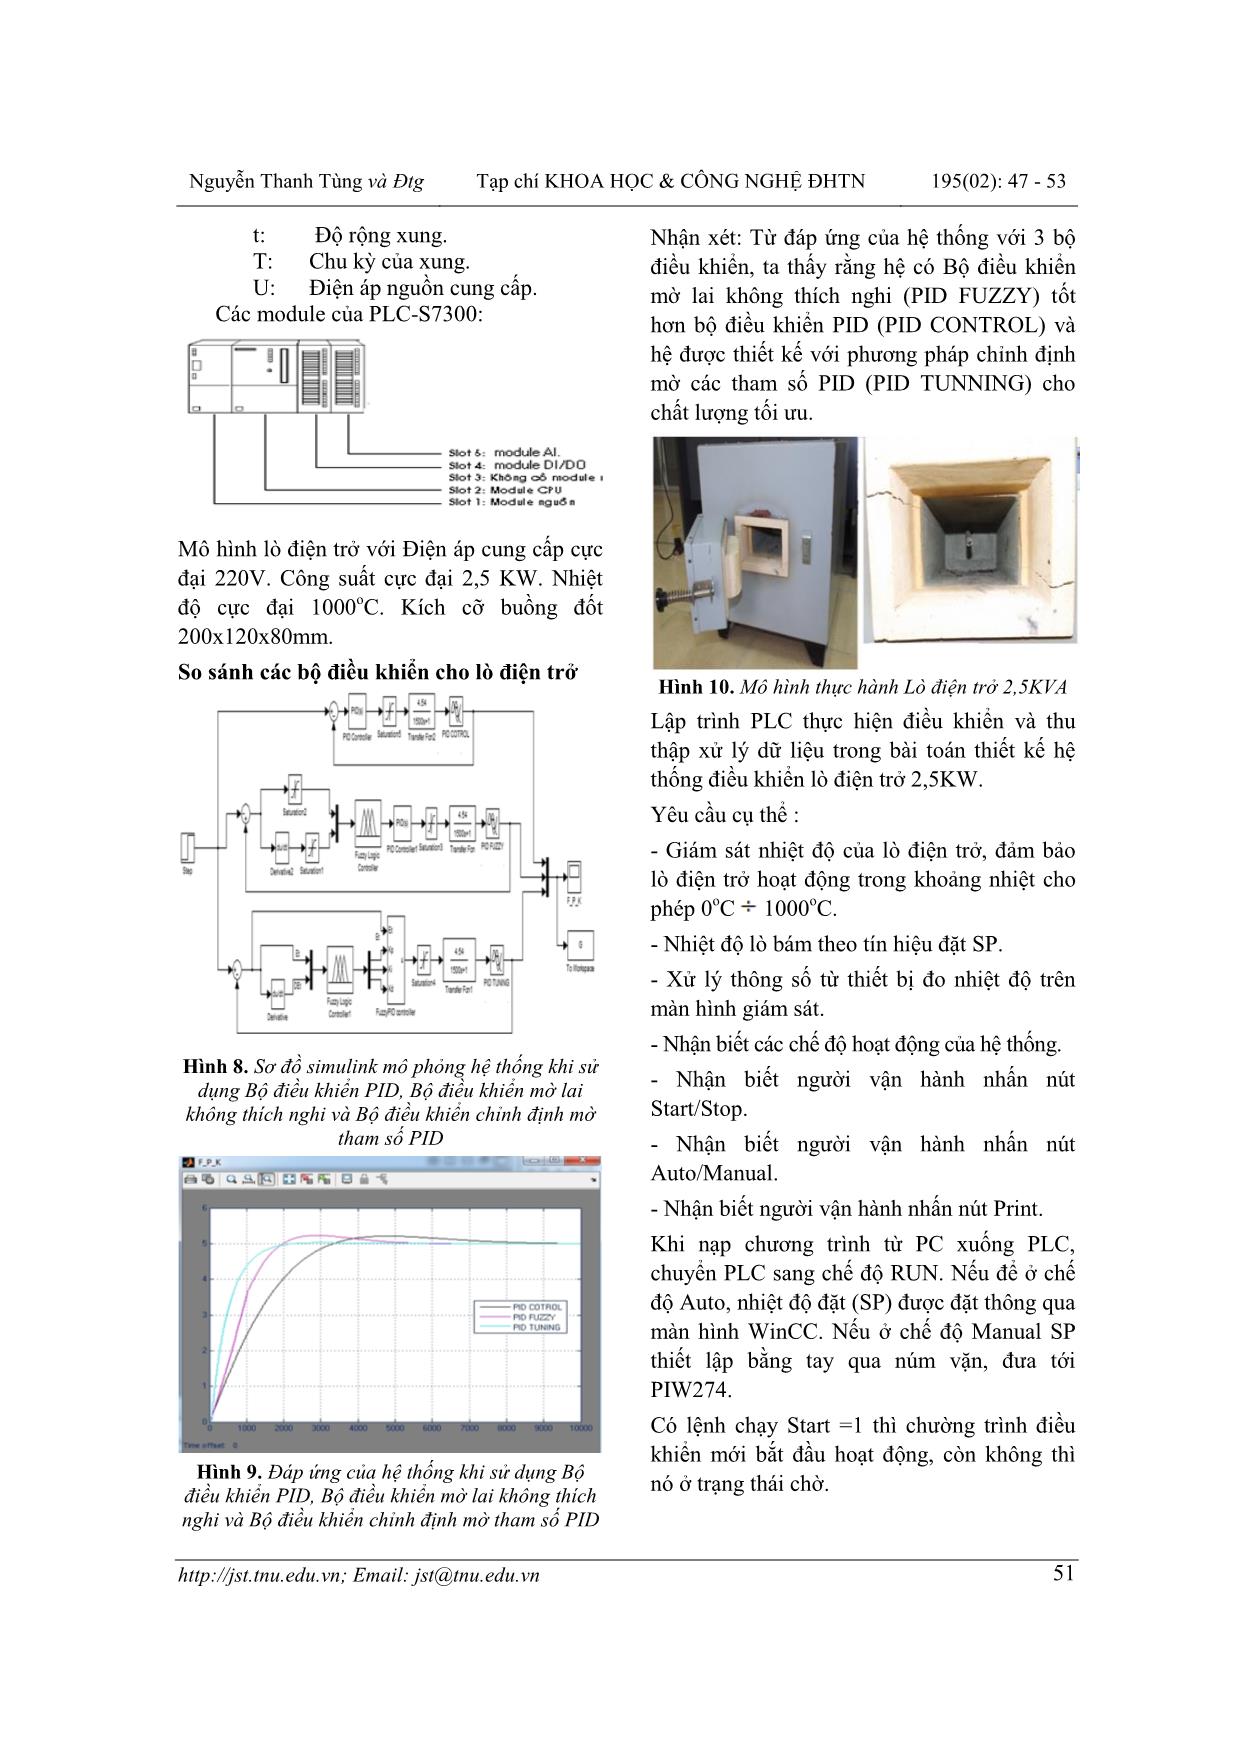 Thiết kế hệ thống điều khiển và giám sát lò điện trở trên cơ sở hệ mờ và PLC S7 300 trang 5